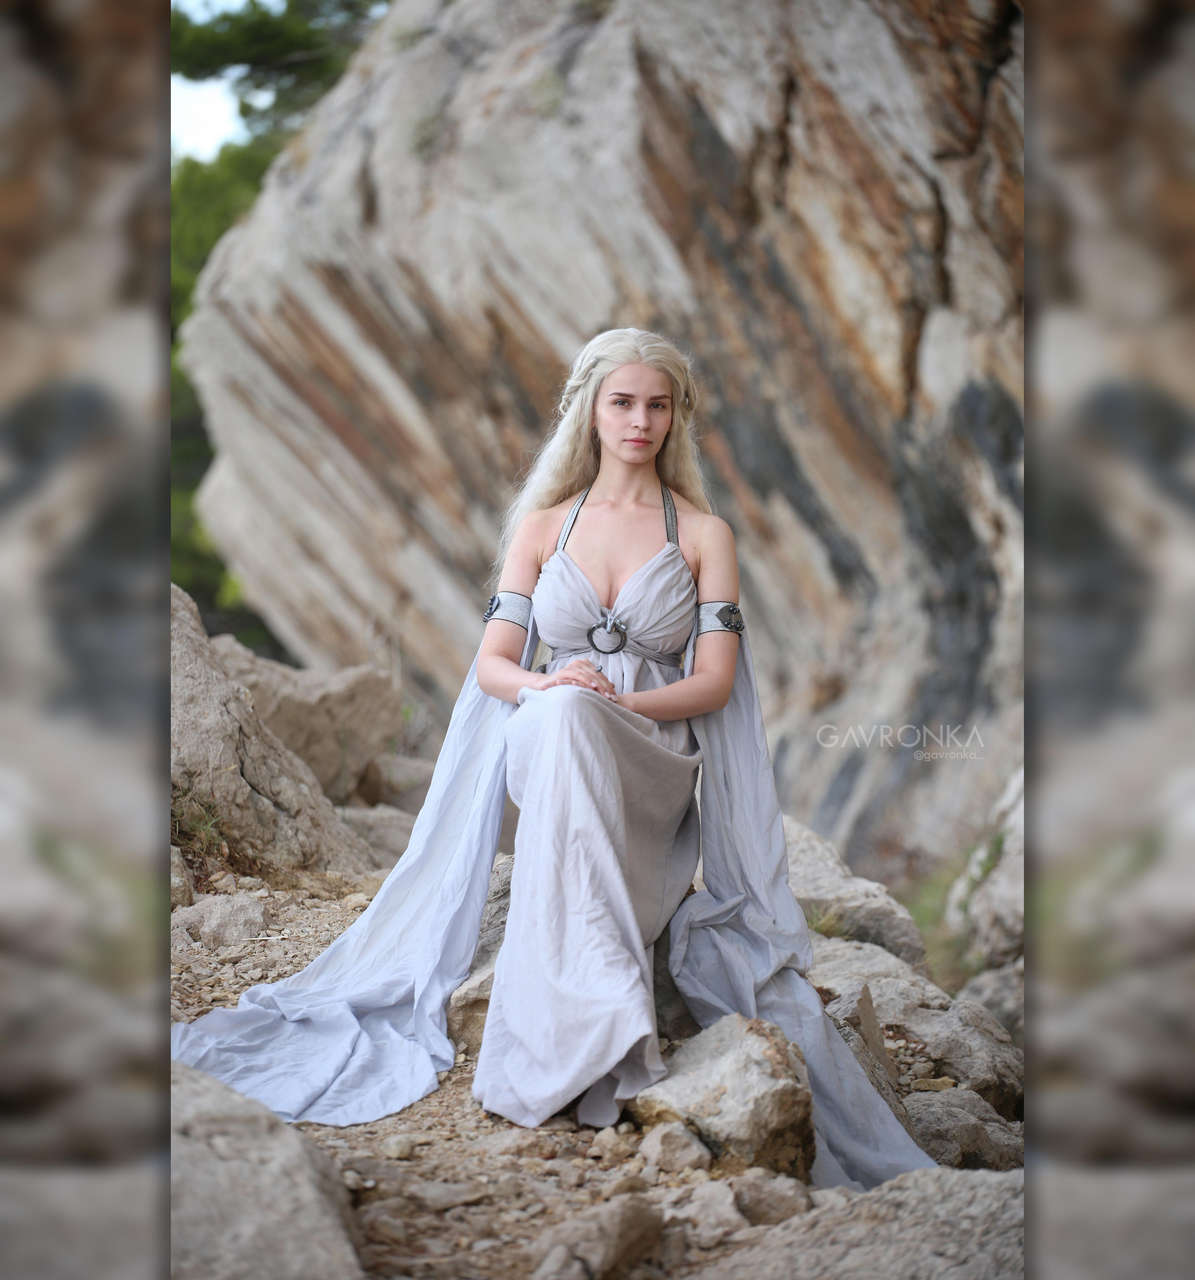 Daenerys Targaryen Season 1 By Gavronka Source Https Www Instagram Com Gavronk